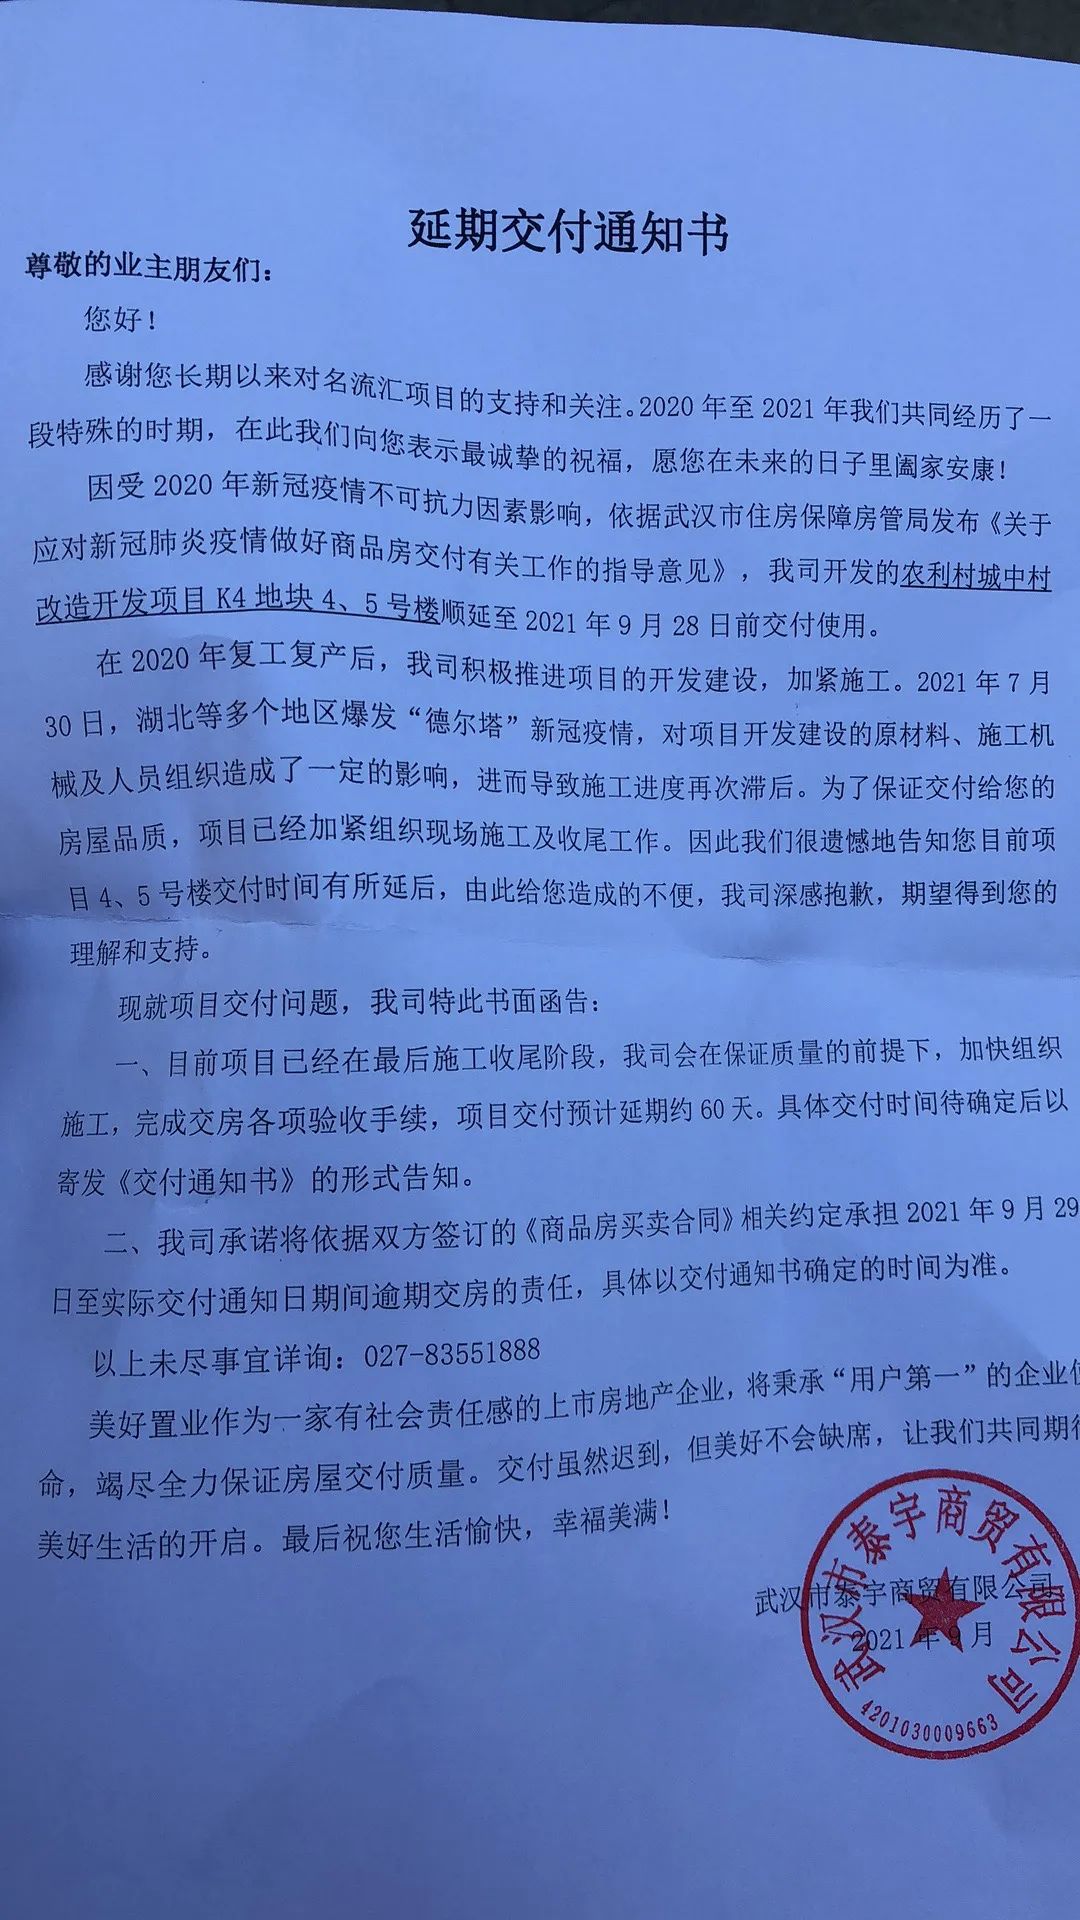 业主急疯！武汉近20个楼盘延期、停工！官方处置来了